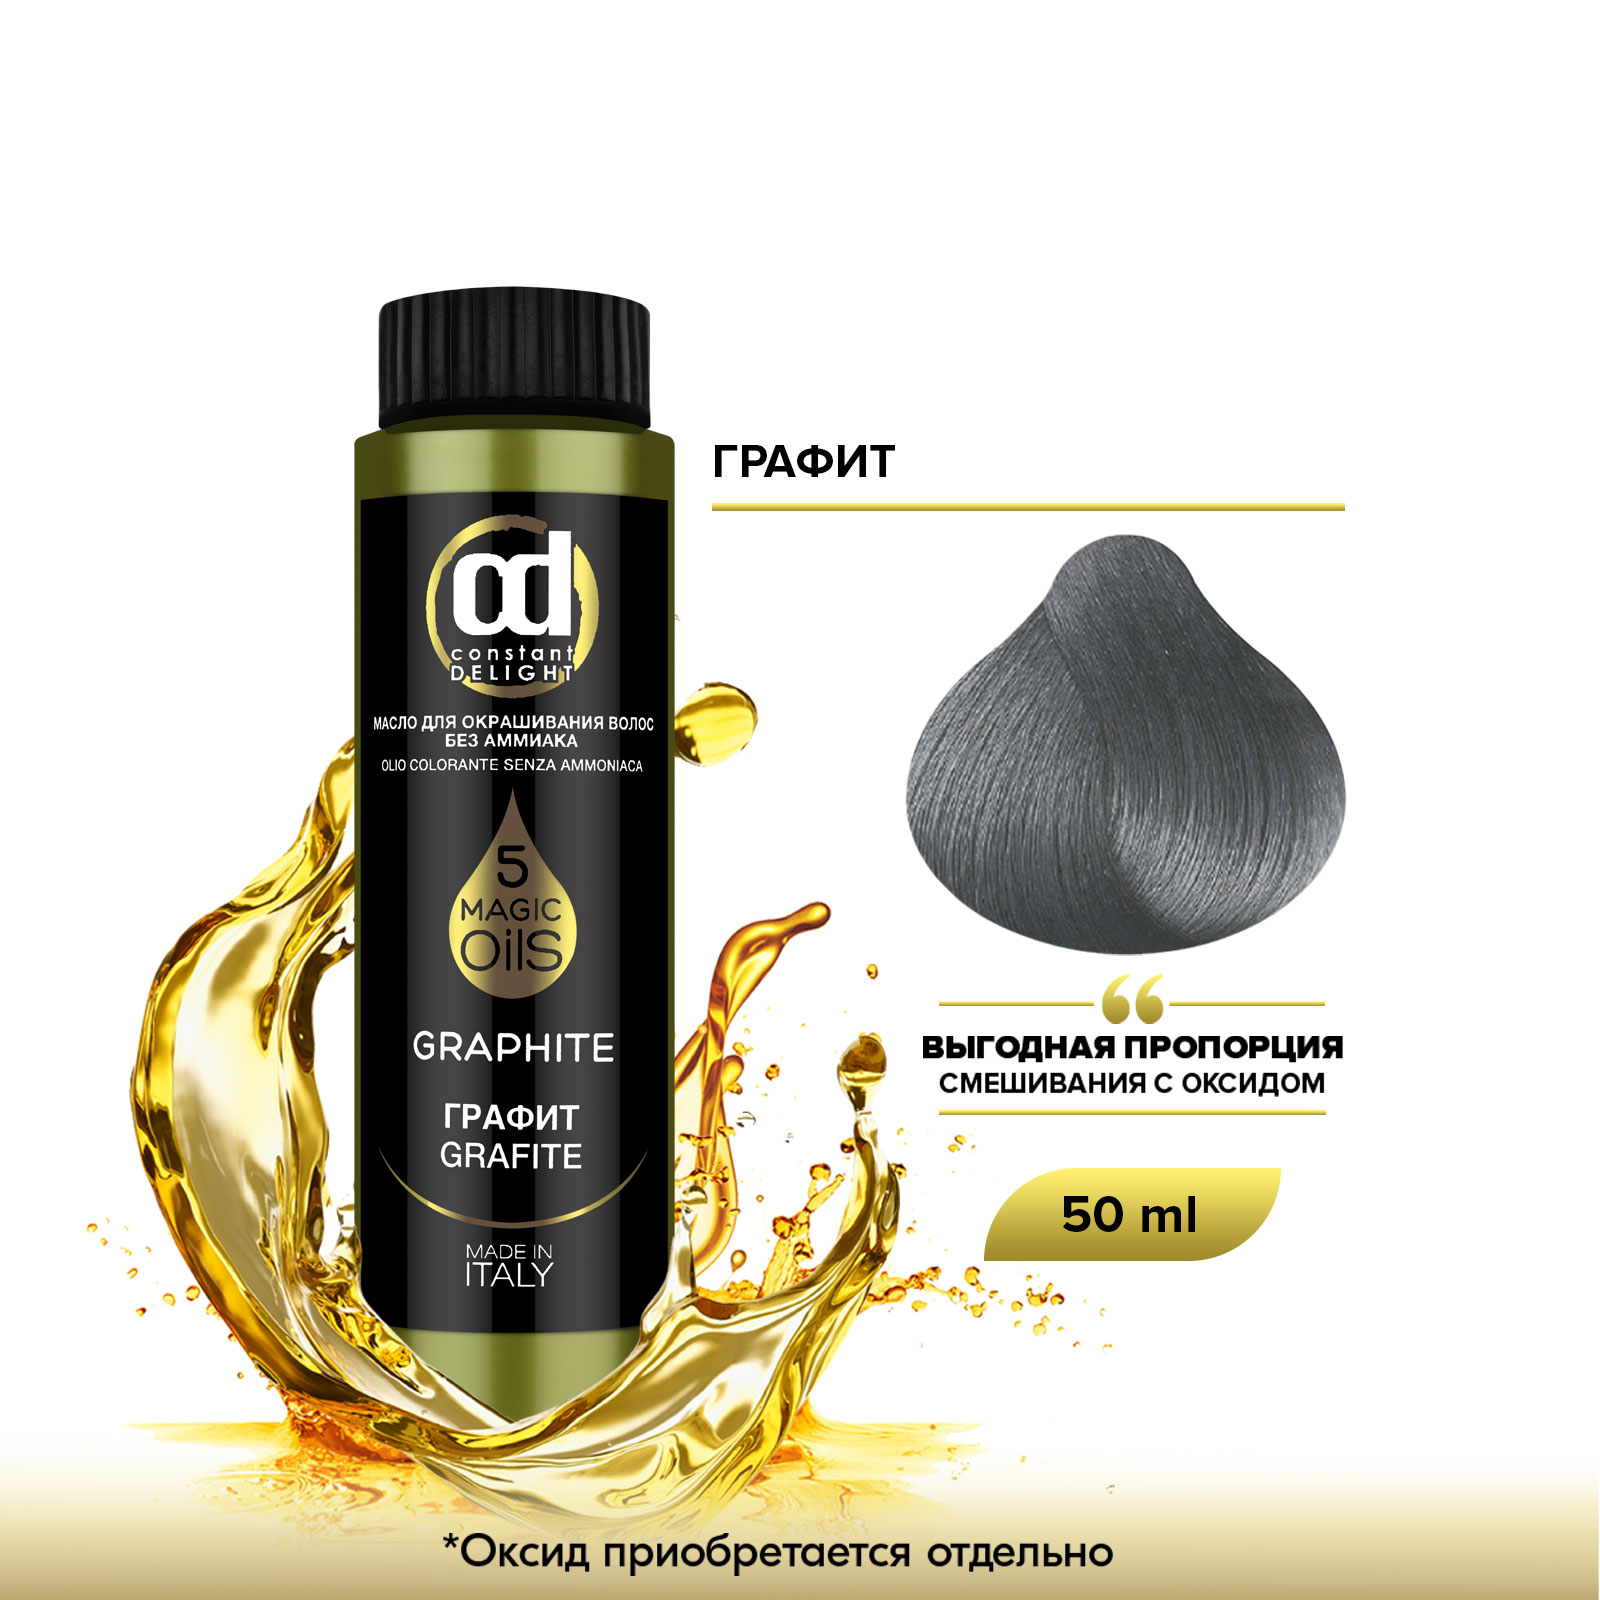 Масло Constant Delight Magic 5 Oils для окрашивания волос графит 50 мл